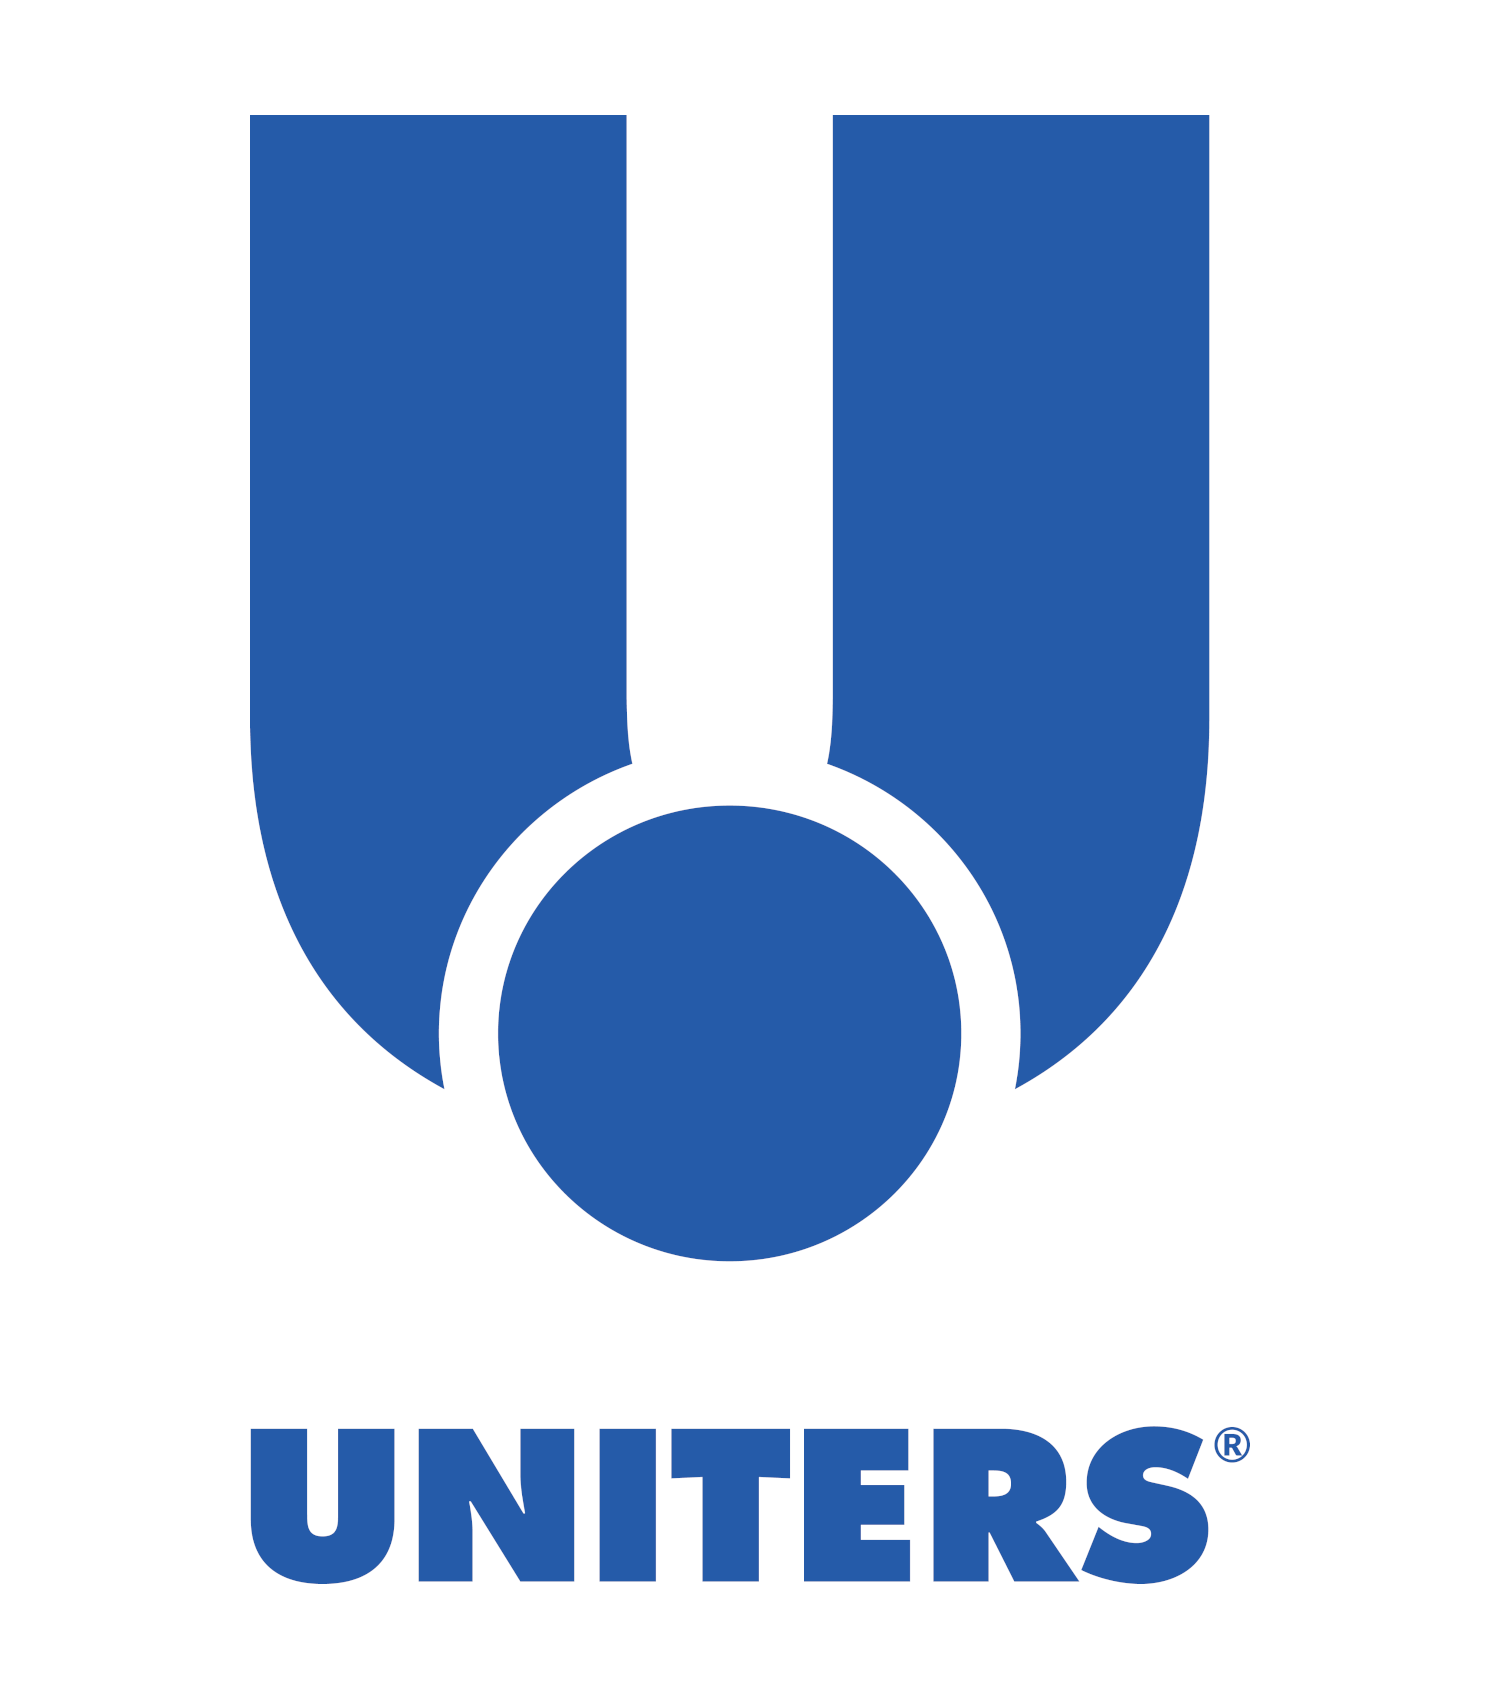 UNITERS